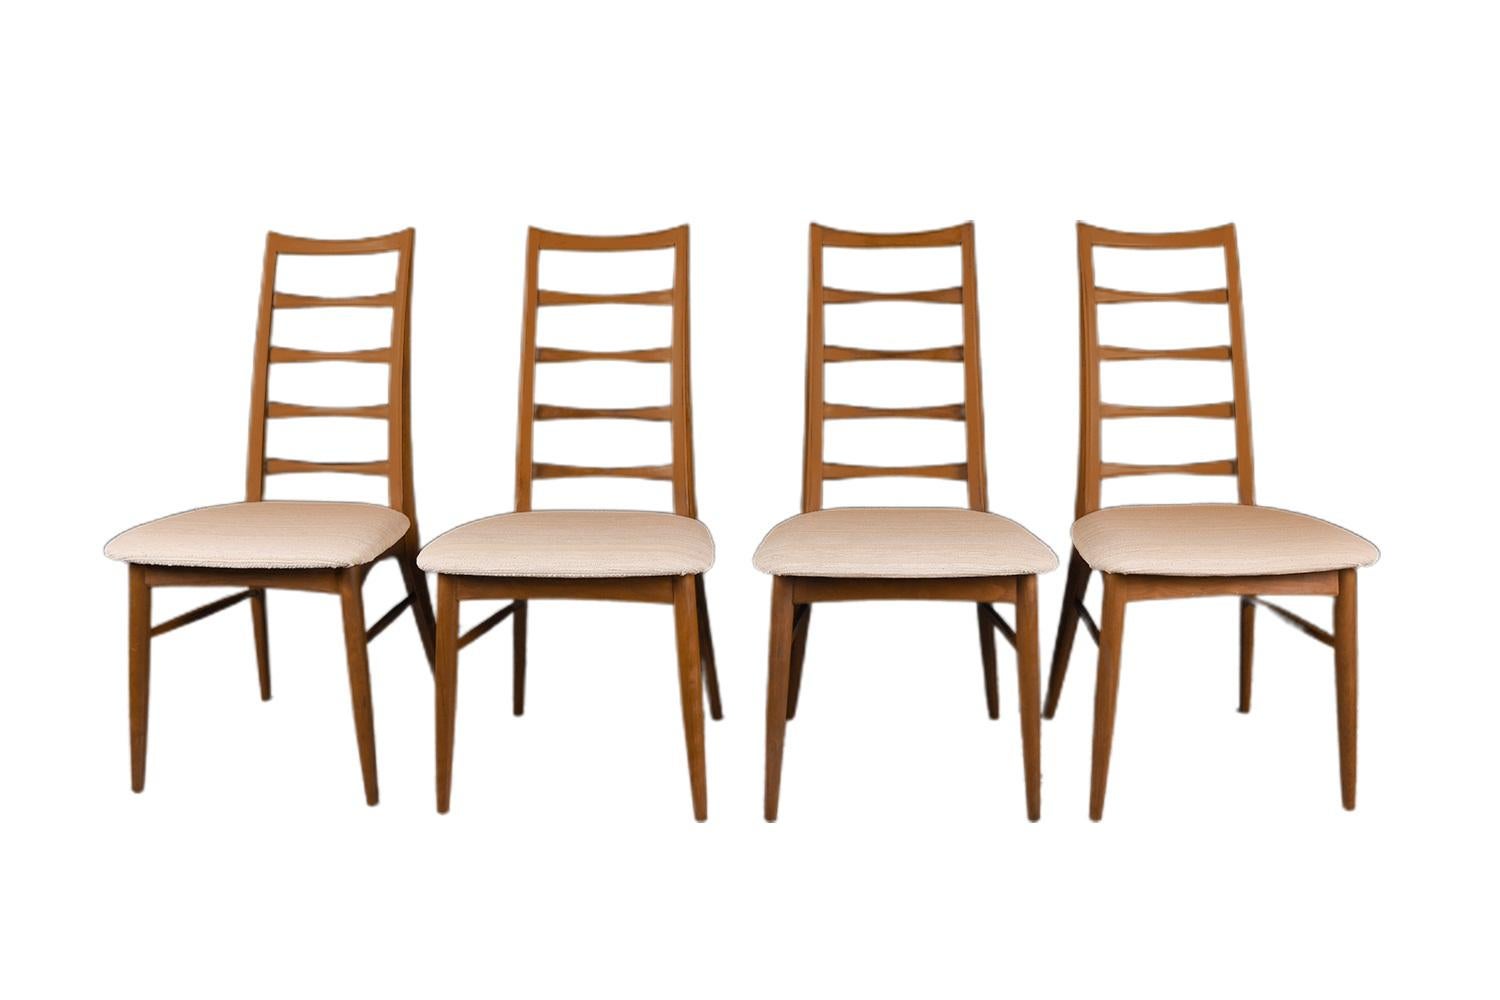 Ein hervorragender Satz von sechs Esszimmerstühlen aus Teakholz, entworfen von Niels Koefoed für Koefoeds Hornslet, Modell 